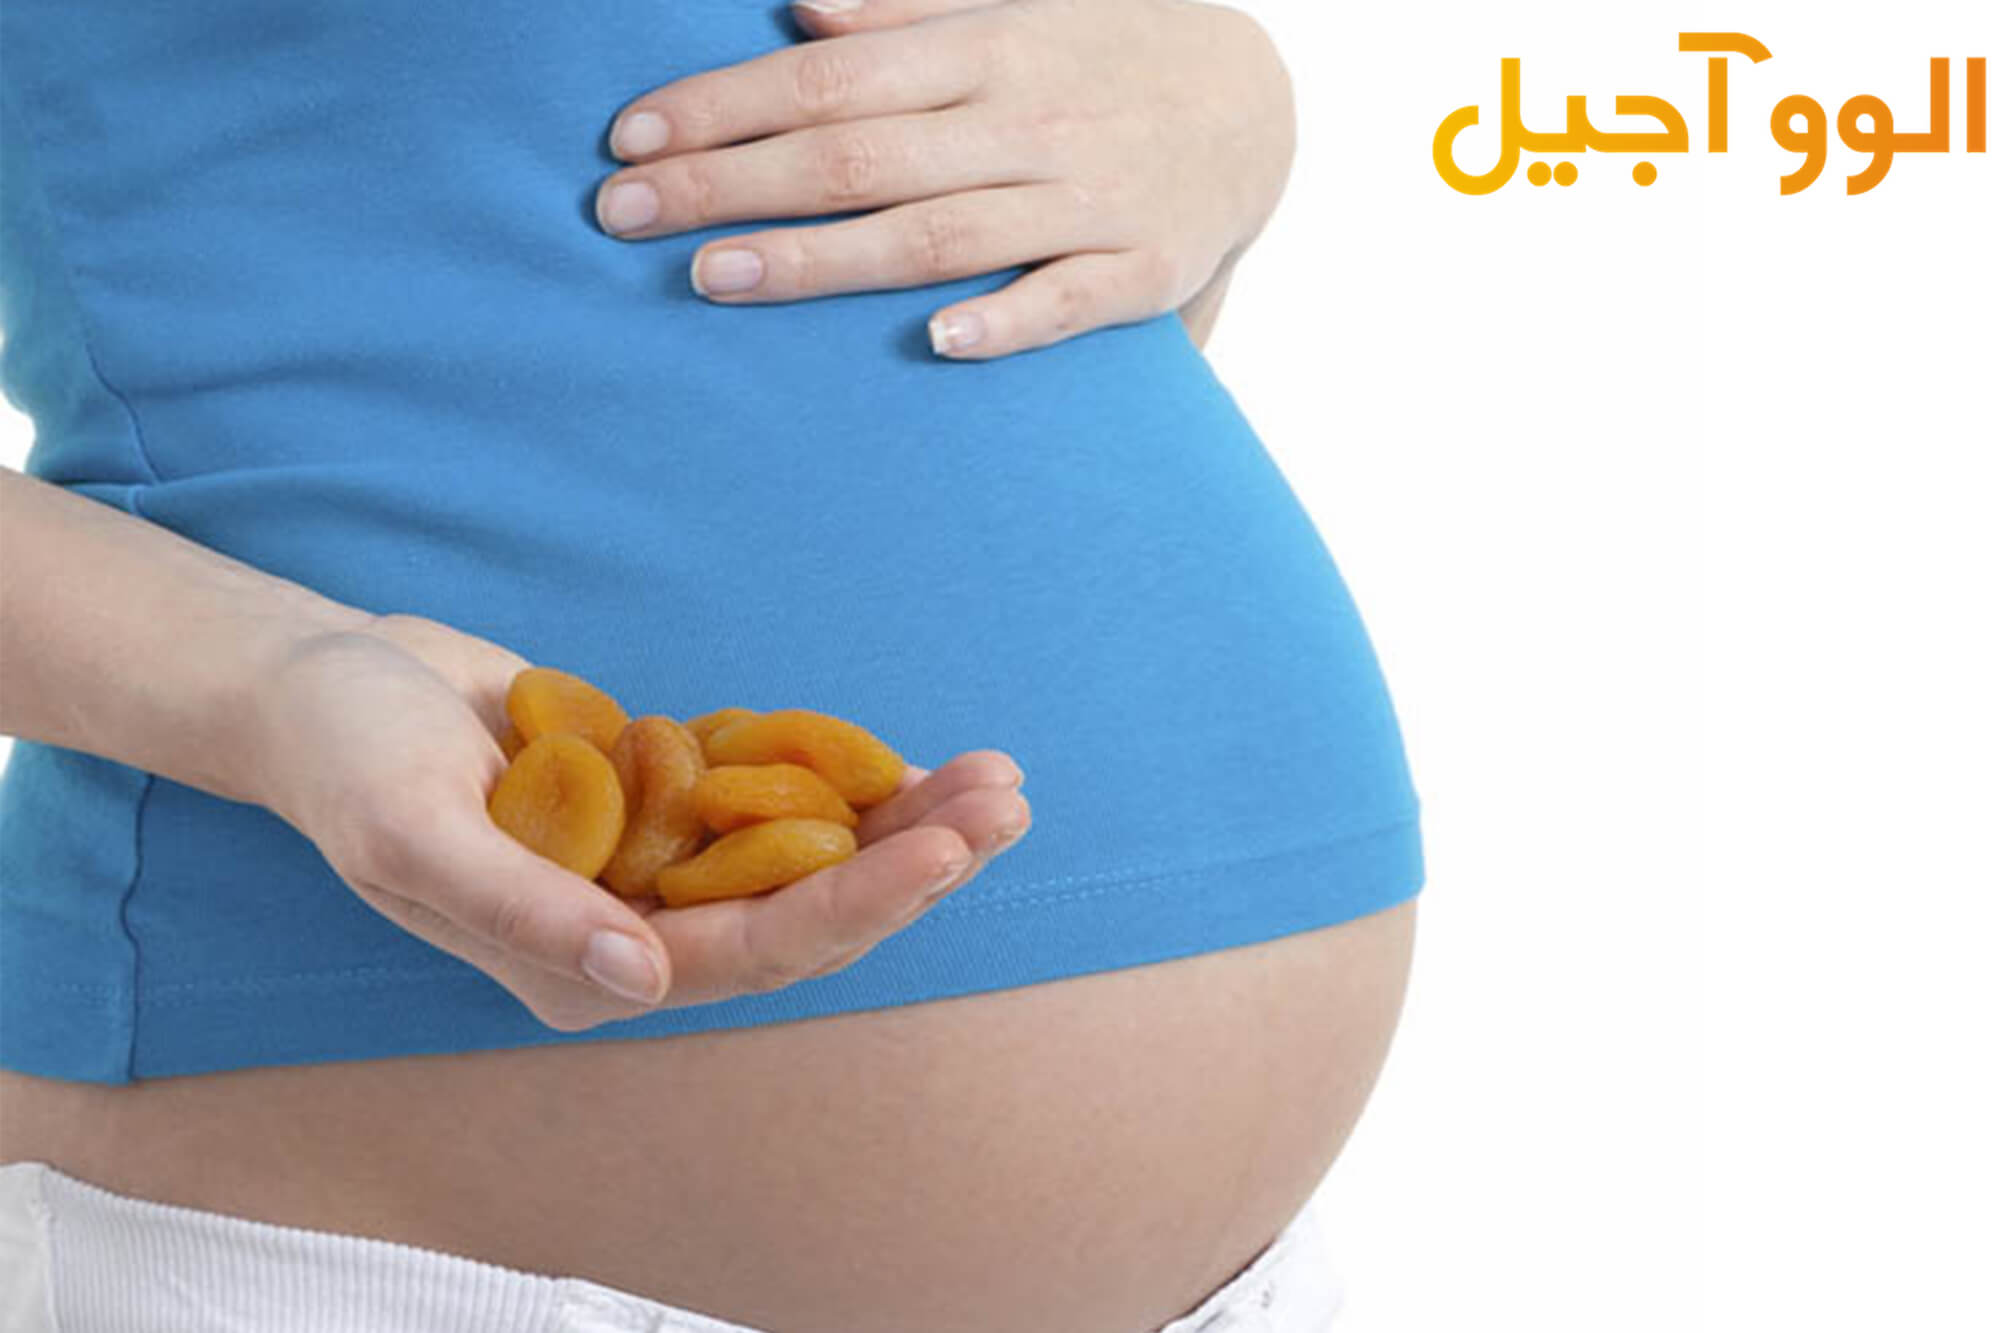 میوه خشک در دوران بارداری مفید است یا مضر؟!